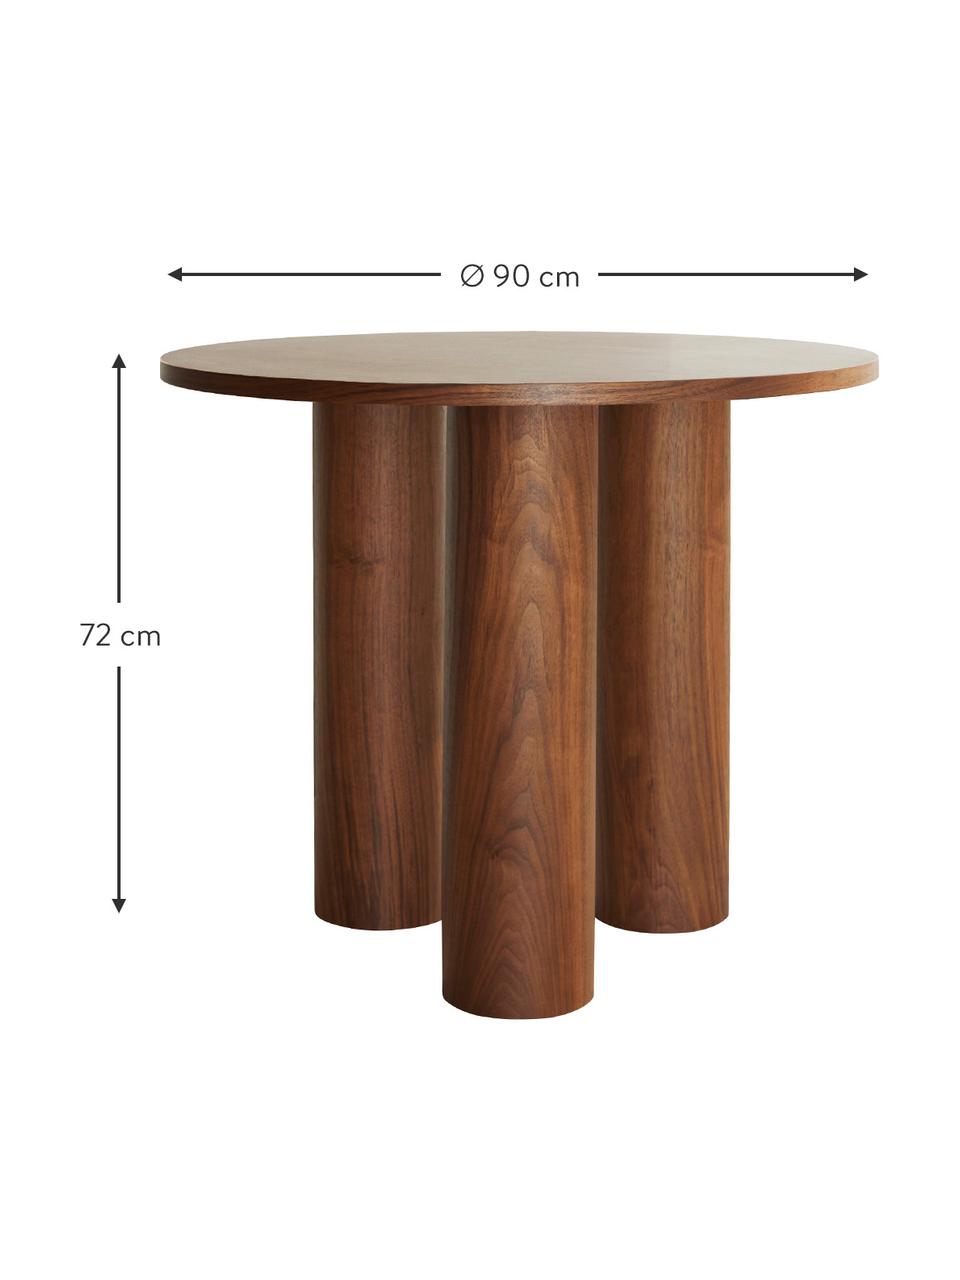 Table ronde en bois Colette, MDF (panneau en fibres de bois à densité moyenne), avec placage en bois de noyer, Bois, Ø 90 x haut. 72 cm